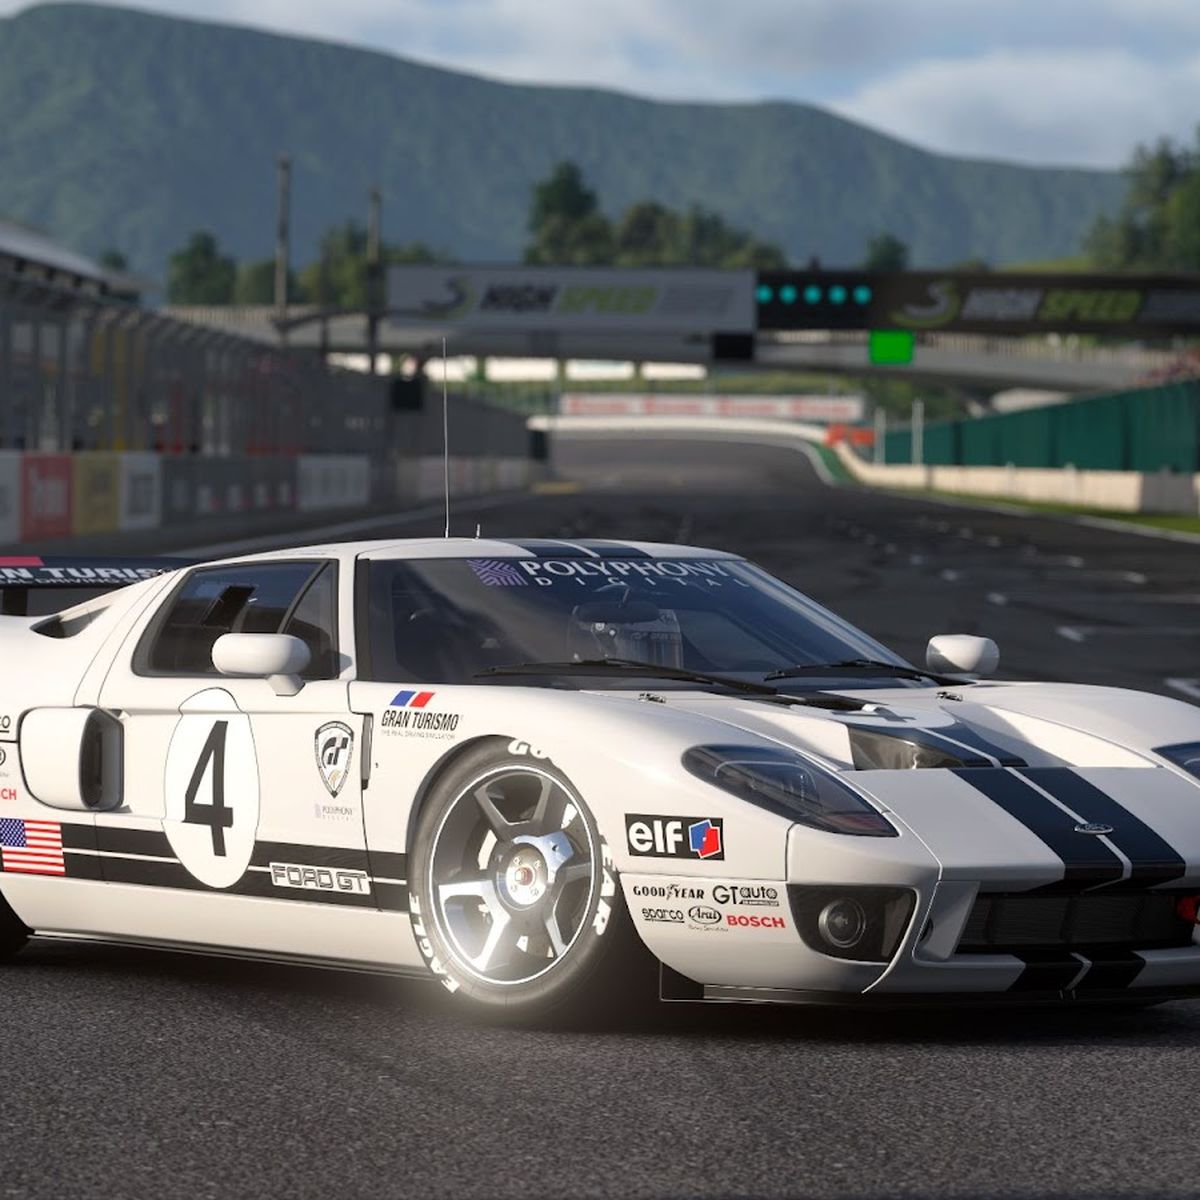 Gran Turismo 7 - PS4 vs PS5 Graphics Comparison 